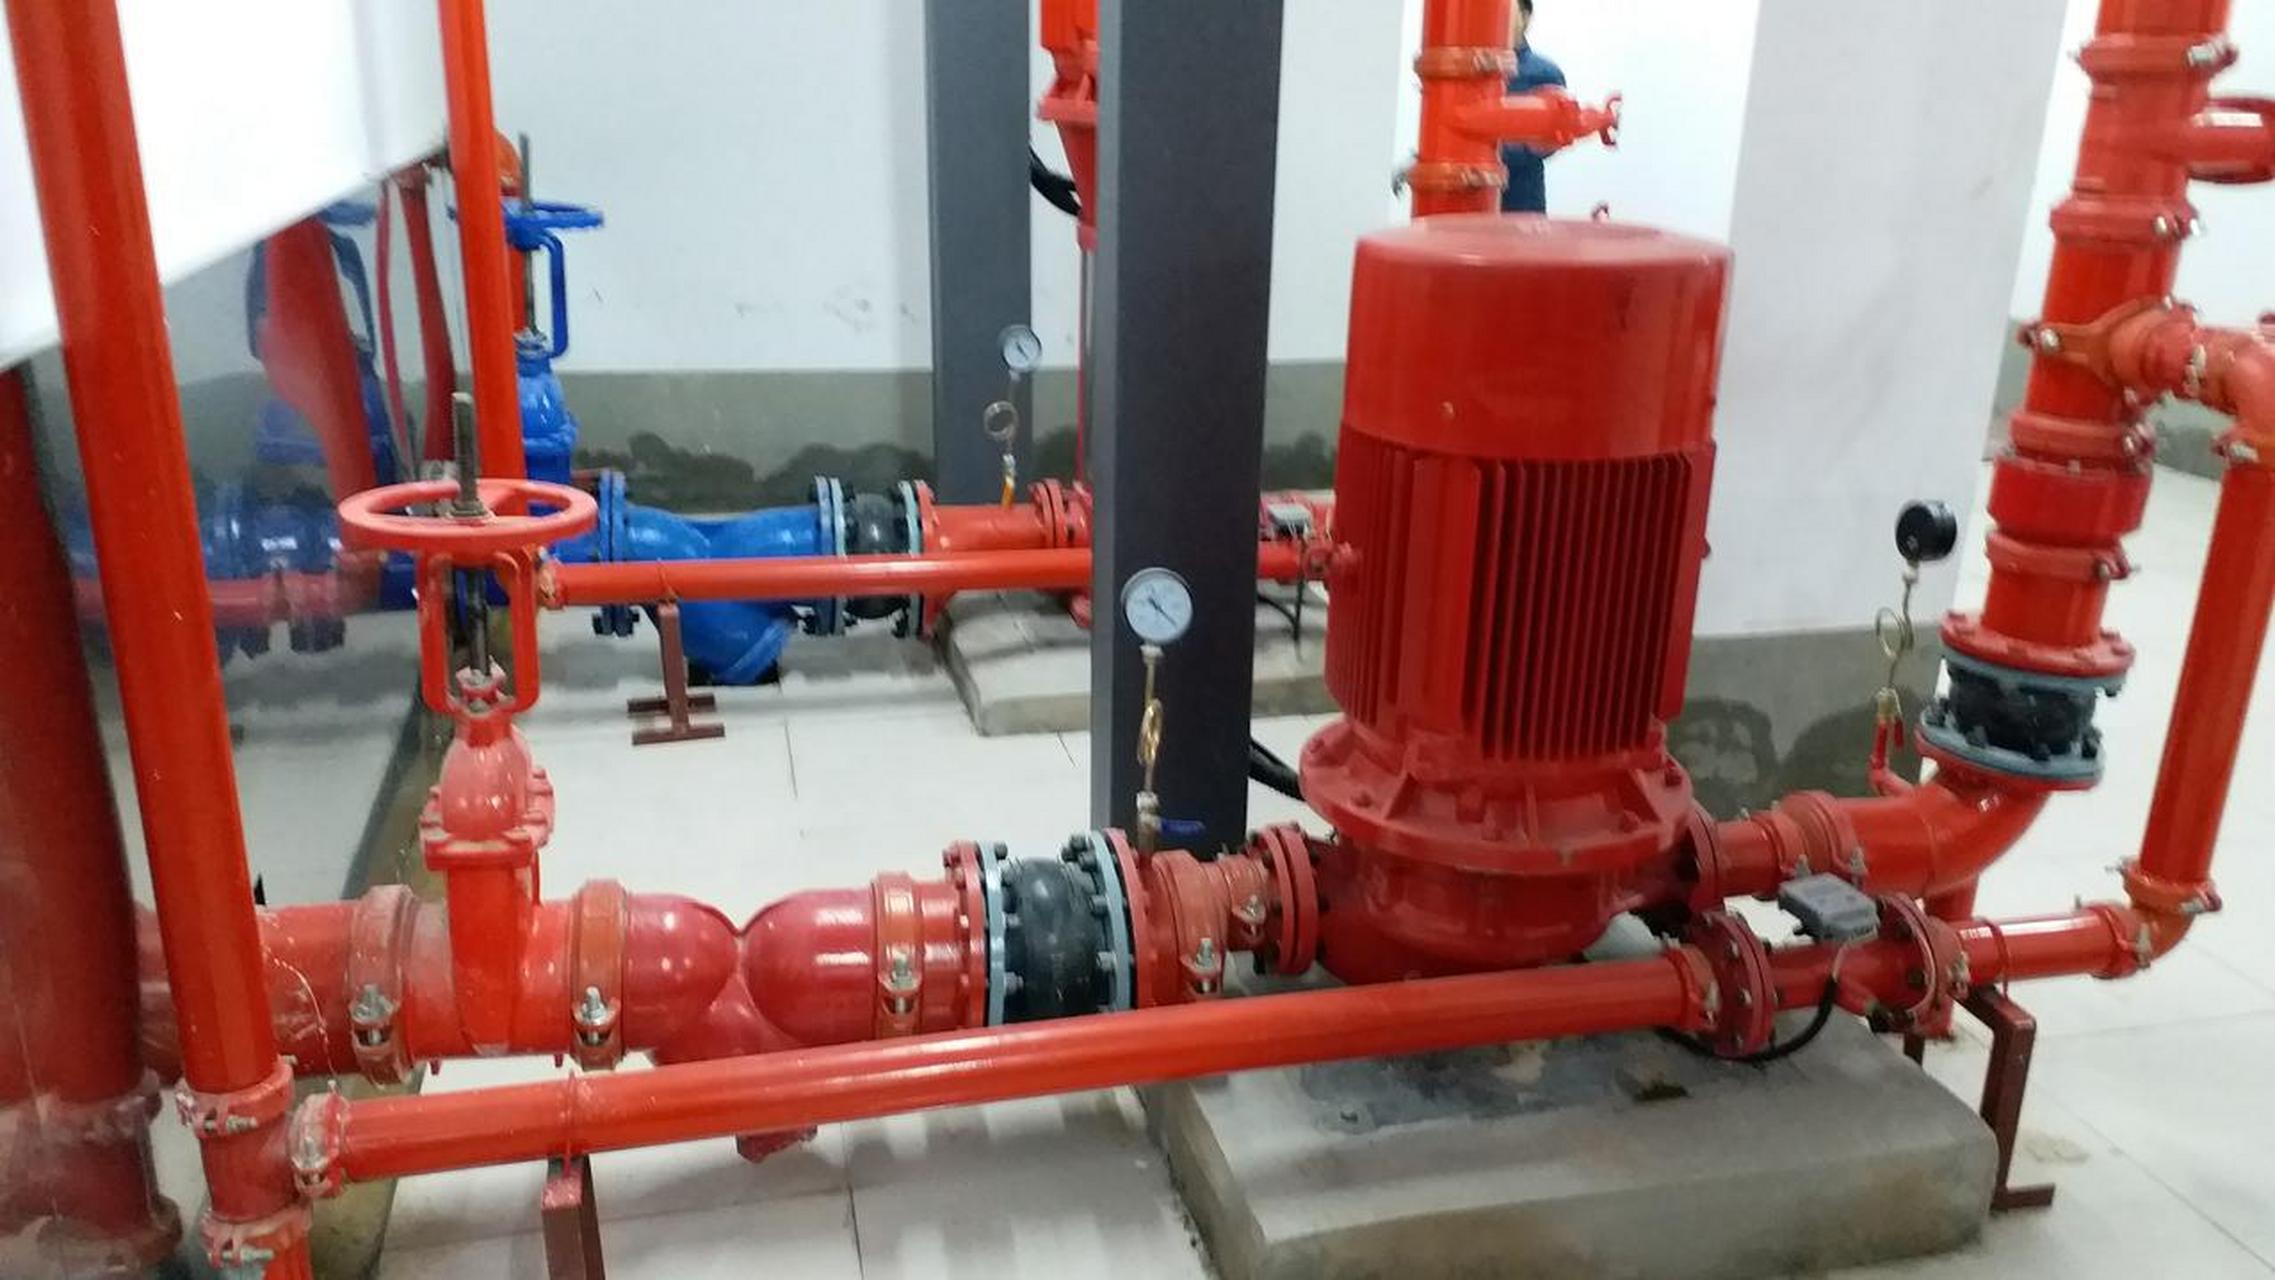 这是一张消防泵的安装图 大家看看其吸水管和出水管上设置的压力表